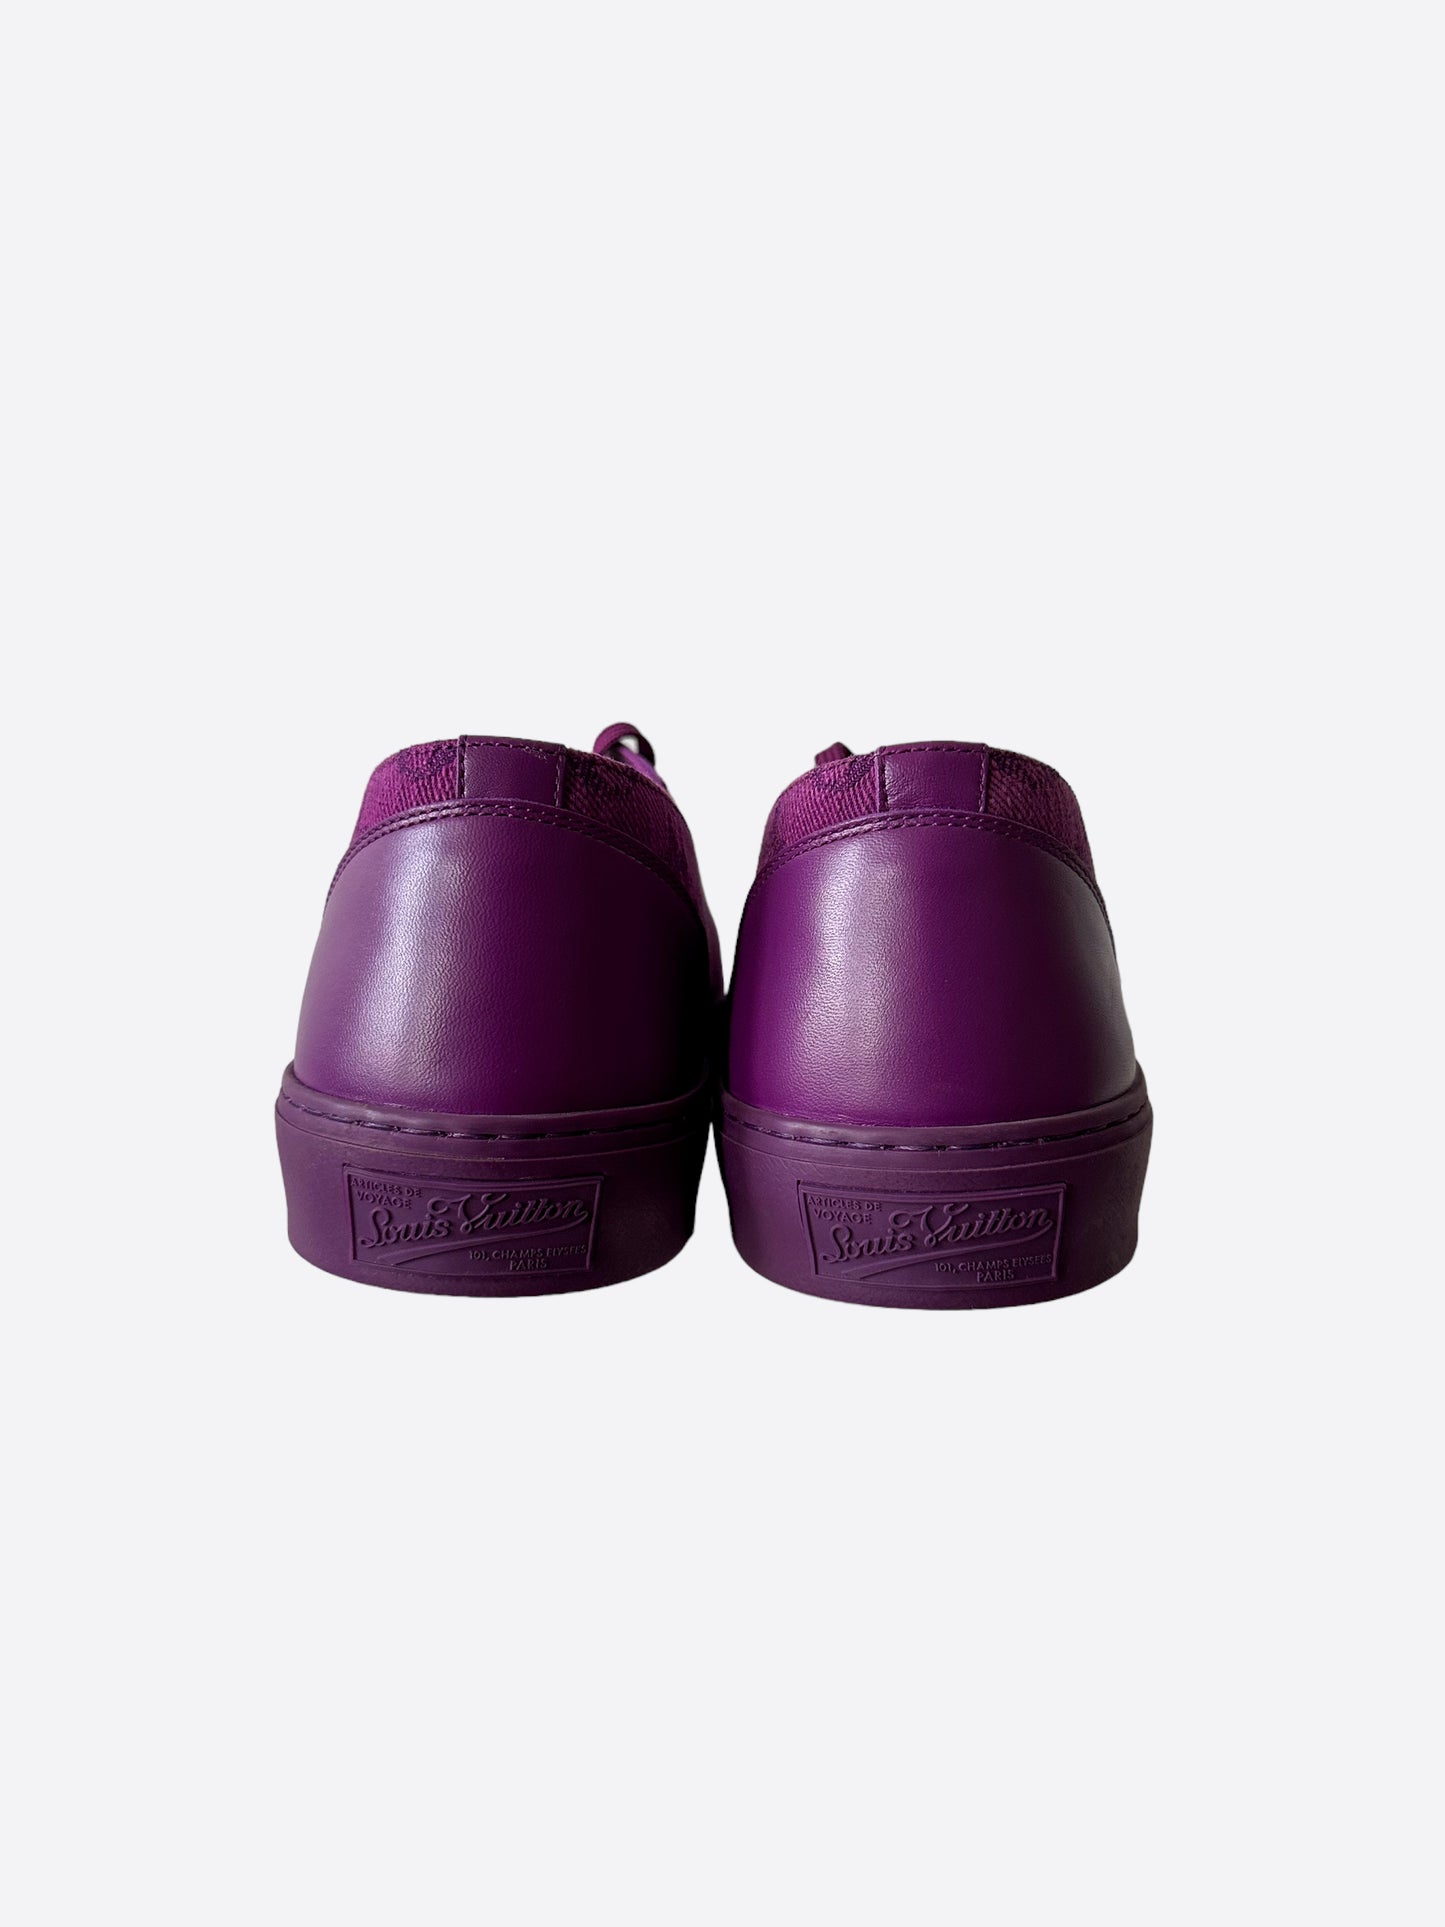 vuitton shoes purple